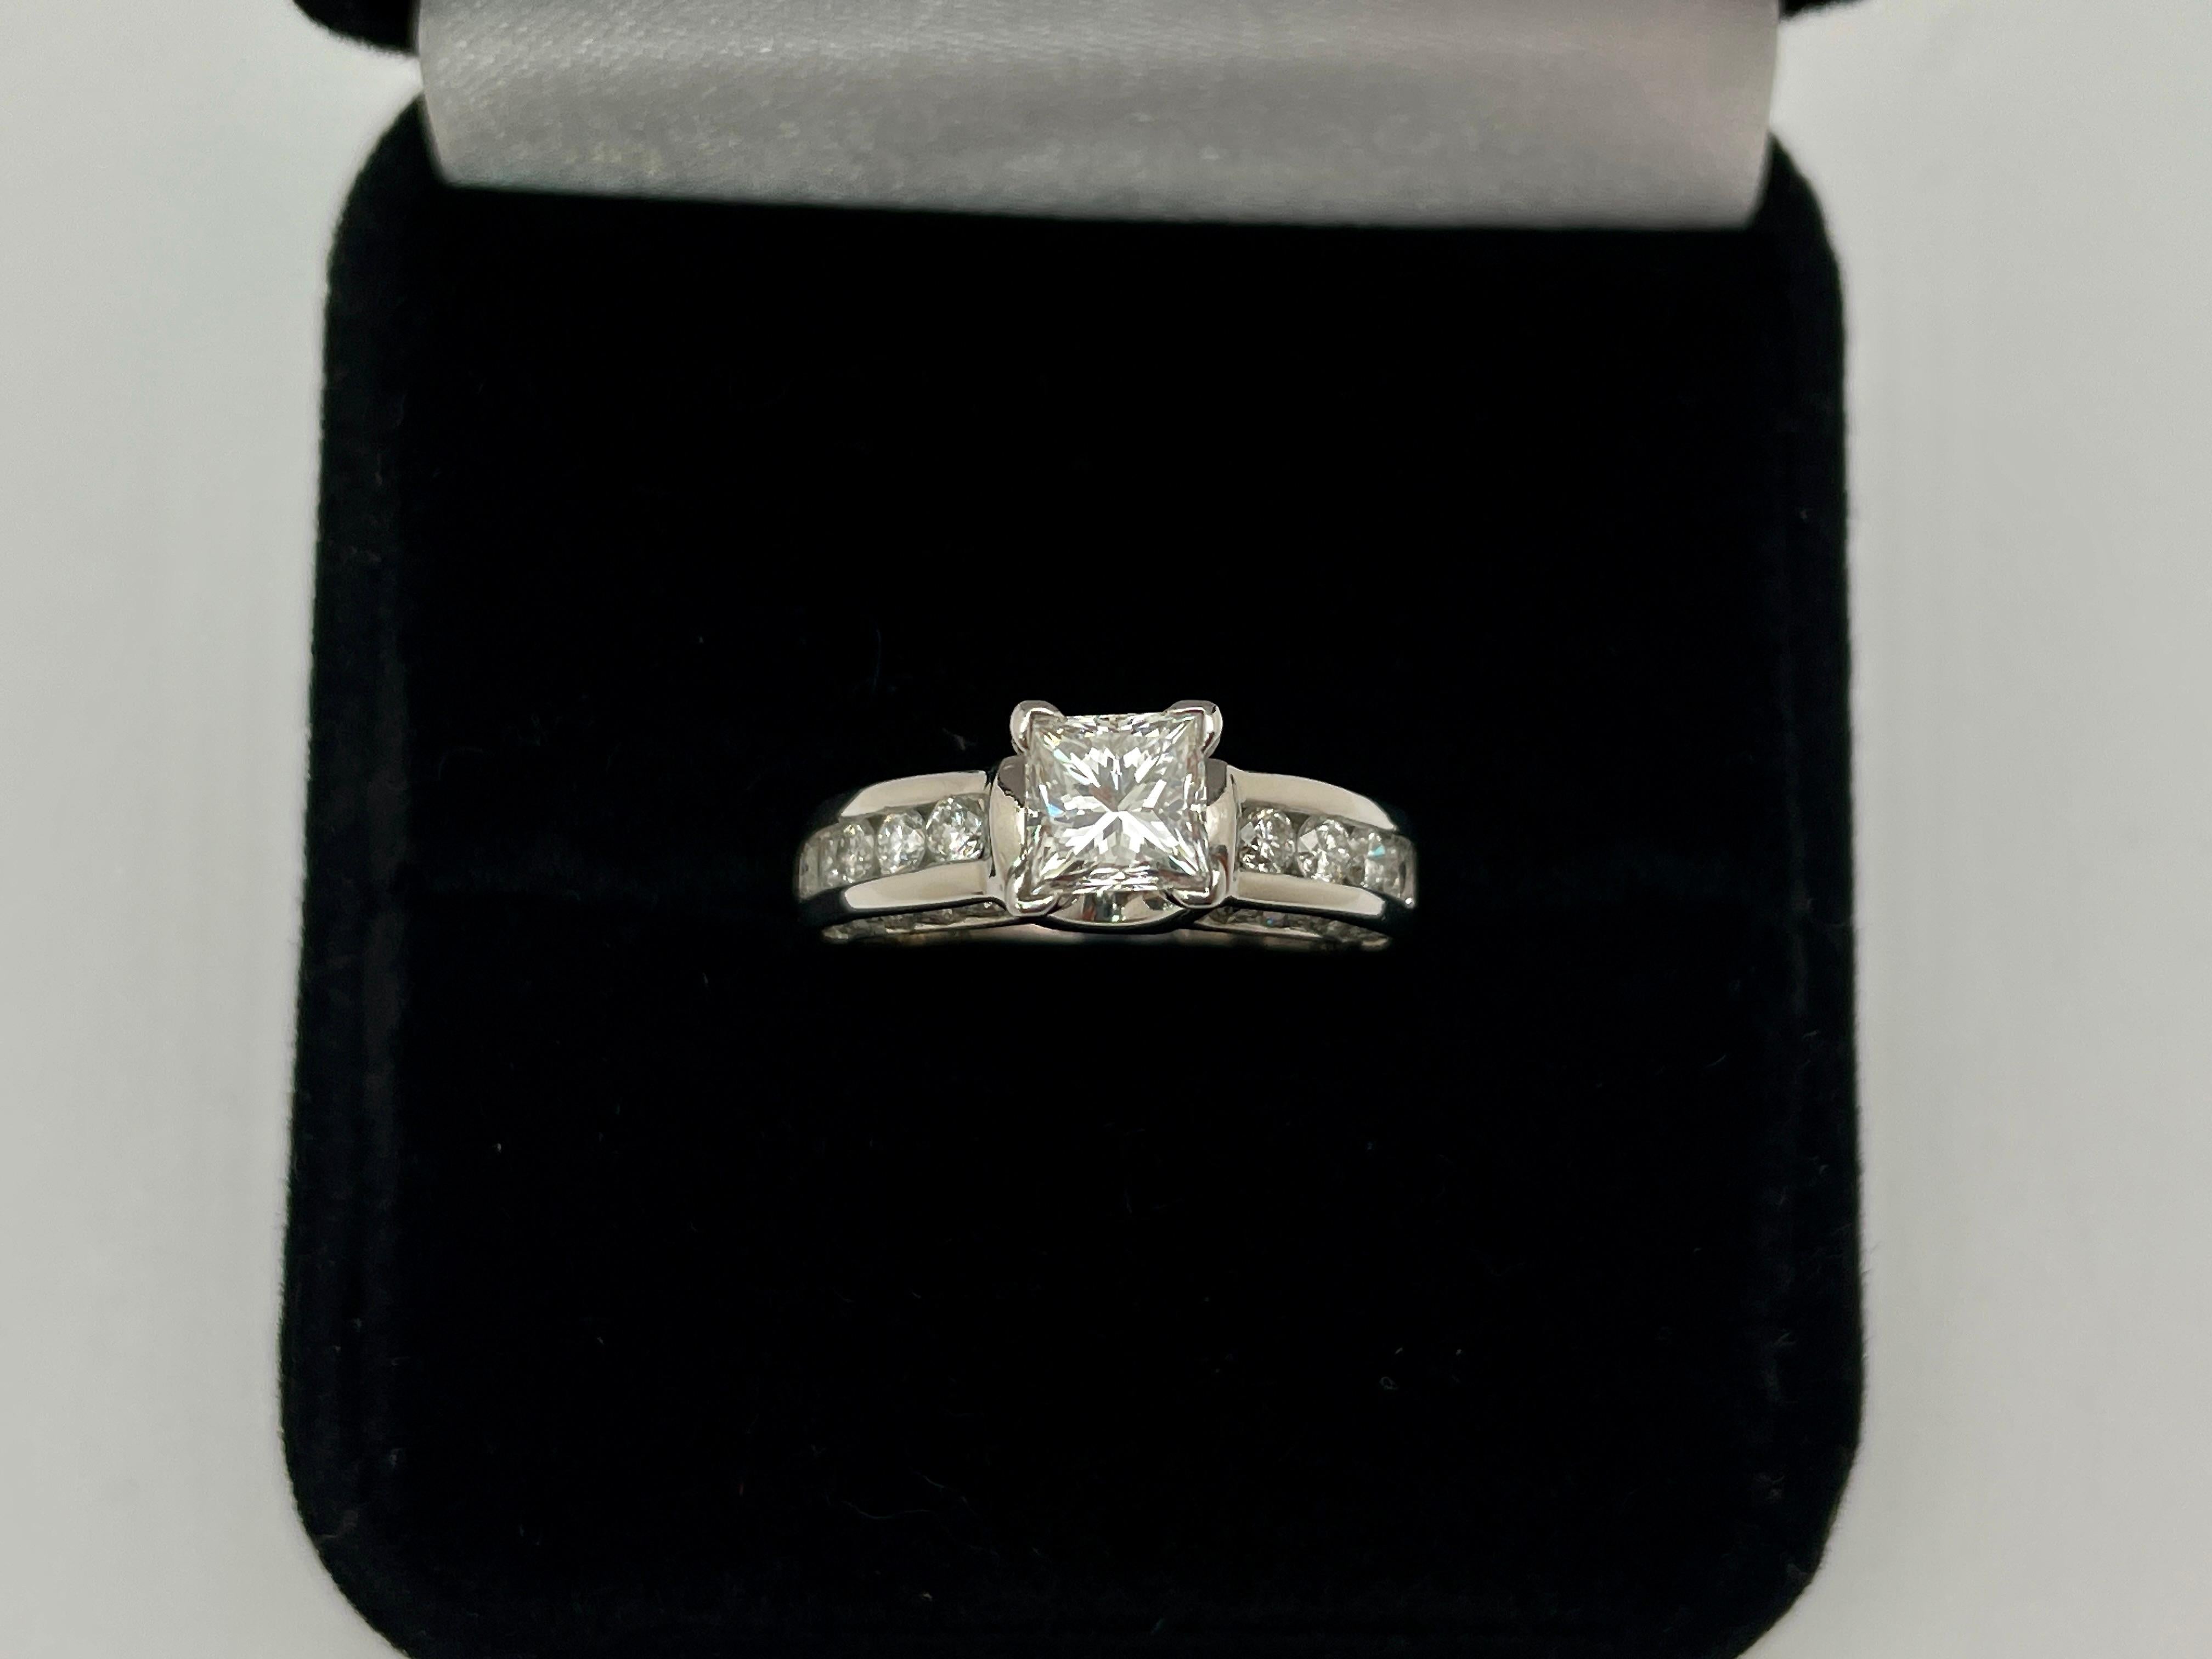 Ein original GIA-zertifizierter Verlobungsring aus Platin mit einem Gesamtdiamanten von 2,15 CT. In der Mitte befindet sich ein quadratischer Diamant im modifizierten Brillantschliff mit einem Gewicht von 0,90 CT, Farbe E, Reinheit VVS2. Auf einer